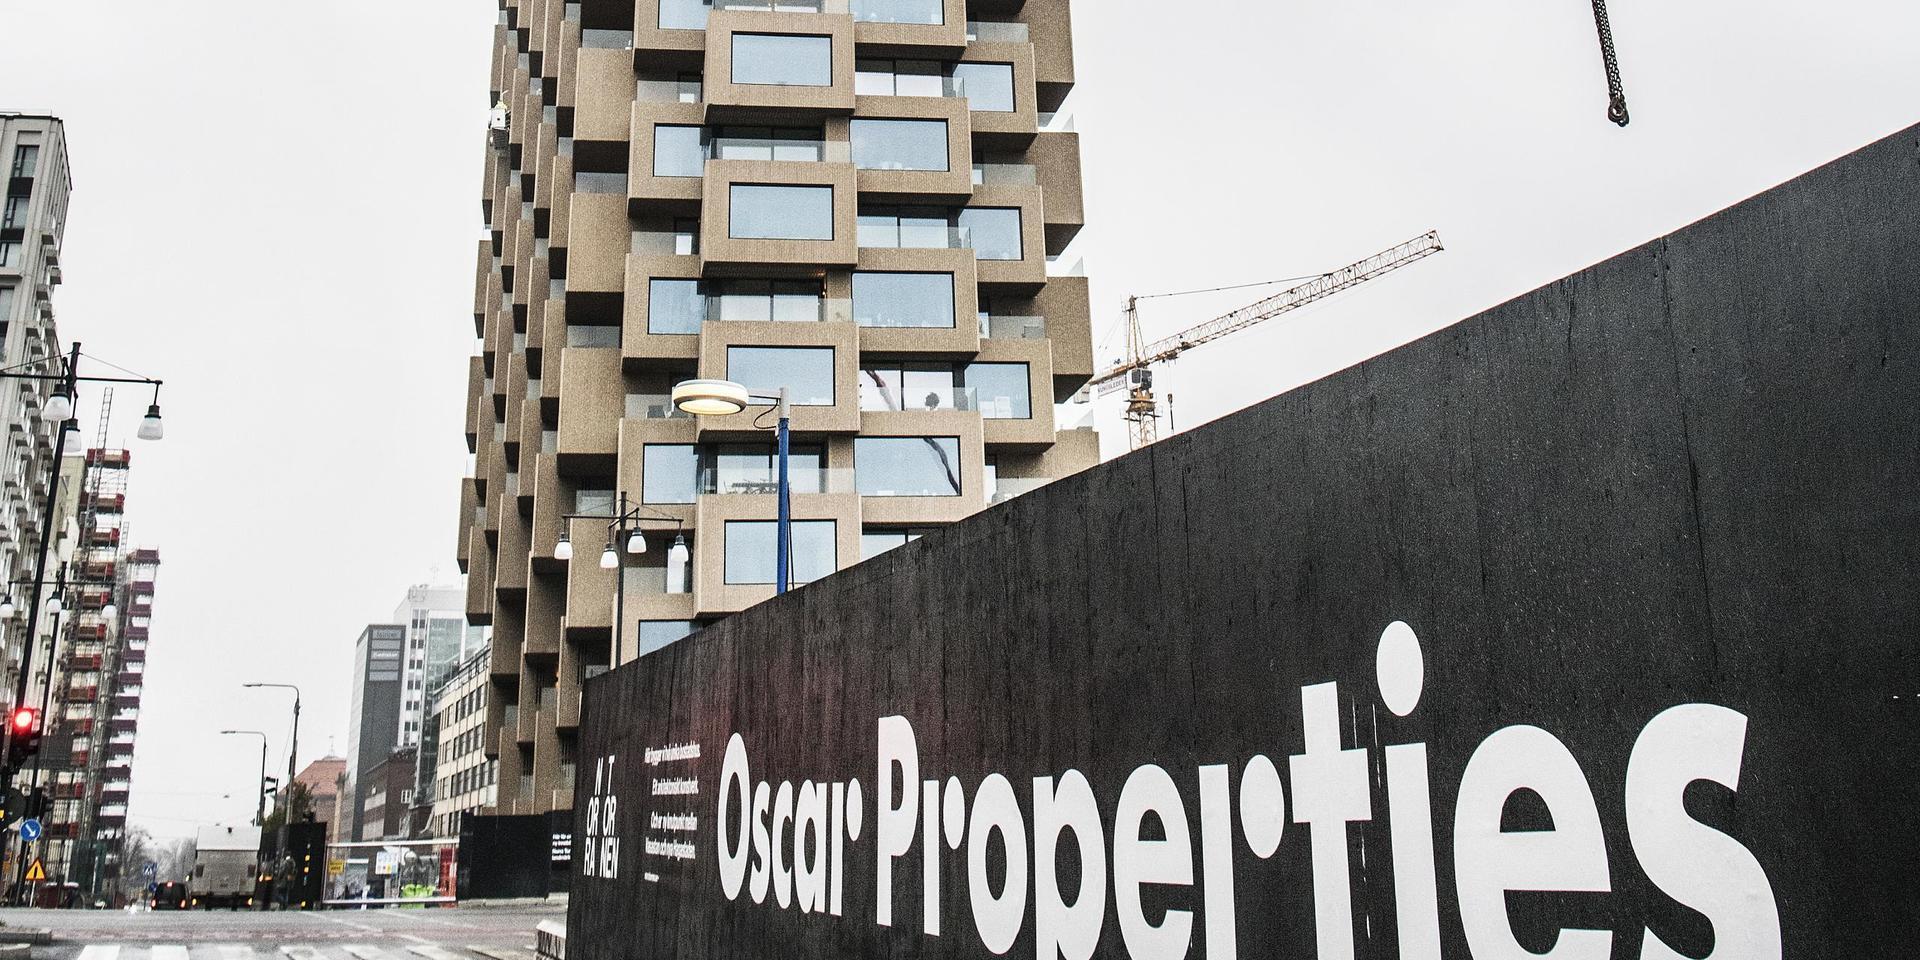 Oscar Properties granskas av Ekobrottsmyndigheten efter misstankar om insiderbrott. Arkivbild.